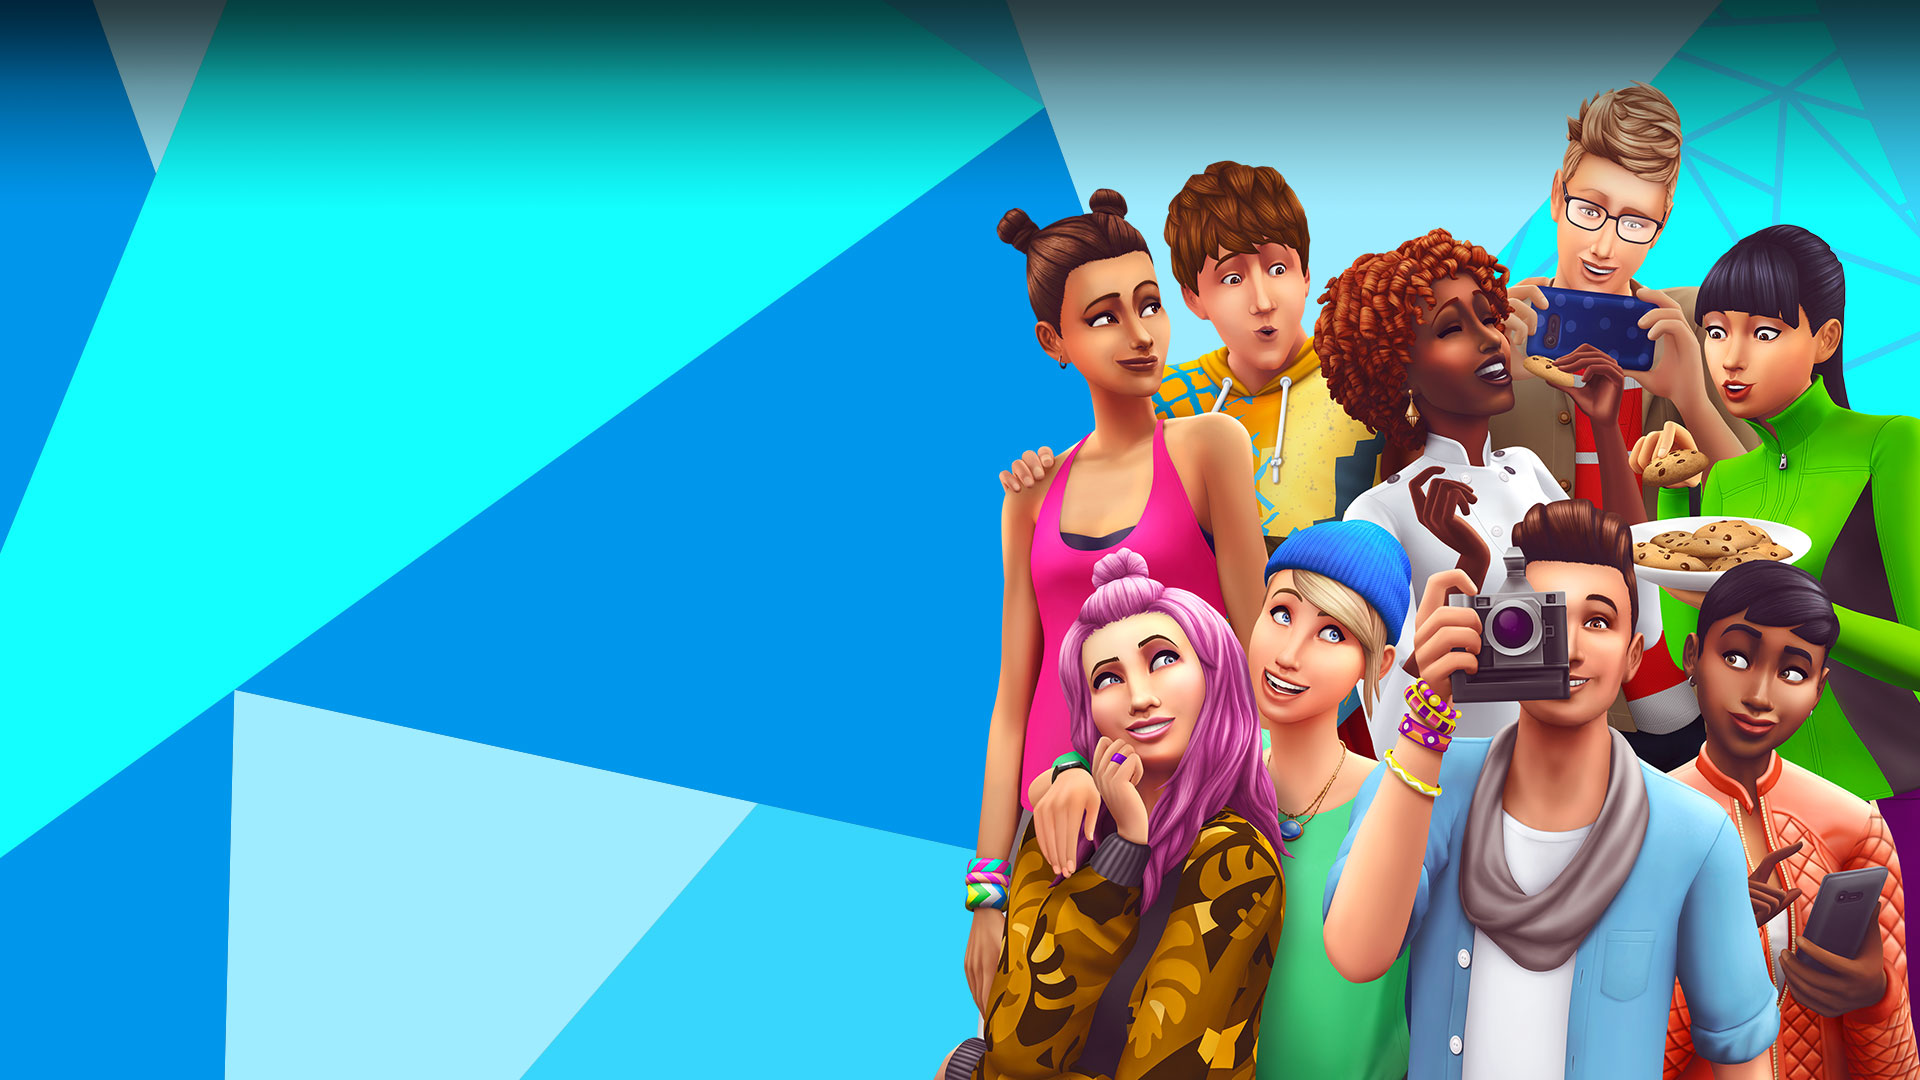 Sims que posan, comparten comida y sacan una foto delante de un mosaico triangular azul, azul claro y blanco.